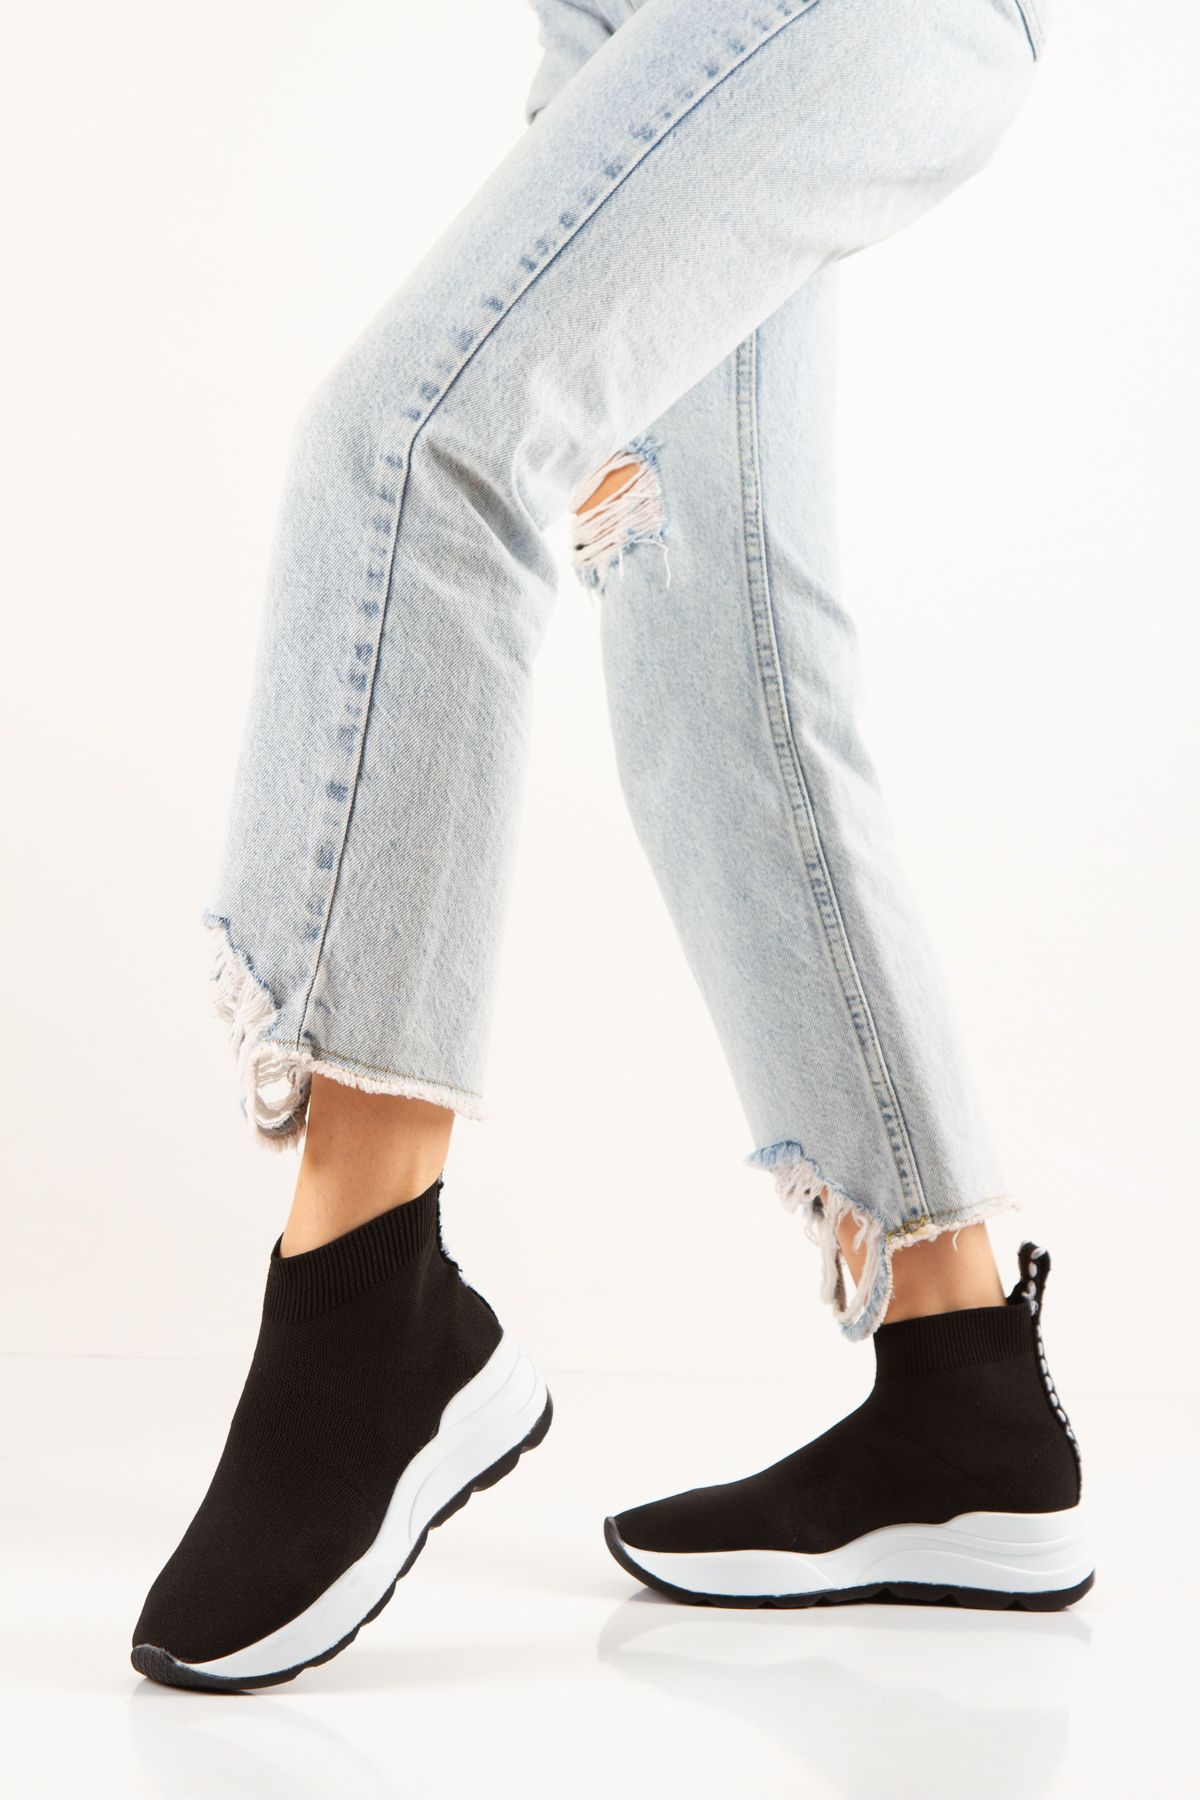 La Scada Kadın Siyah-beyaz Triko Sneaker Çorap Bot Ayakkabı